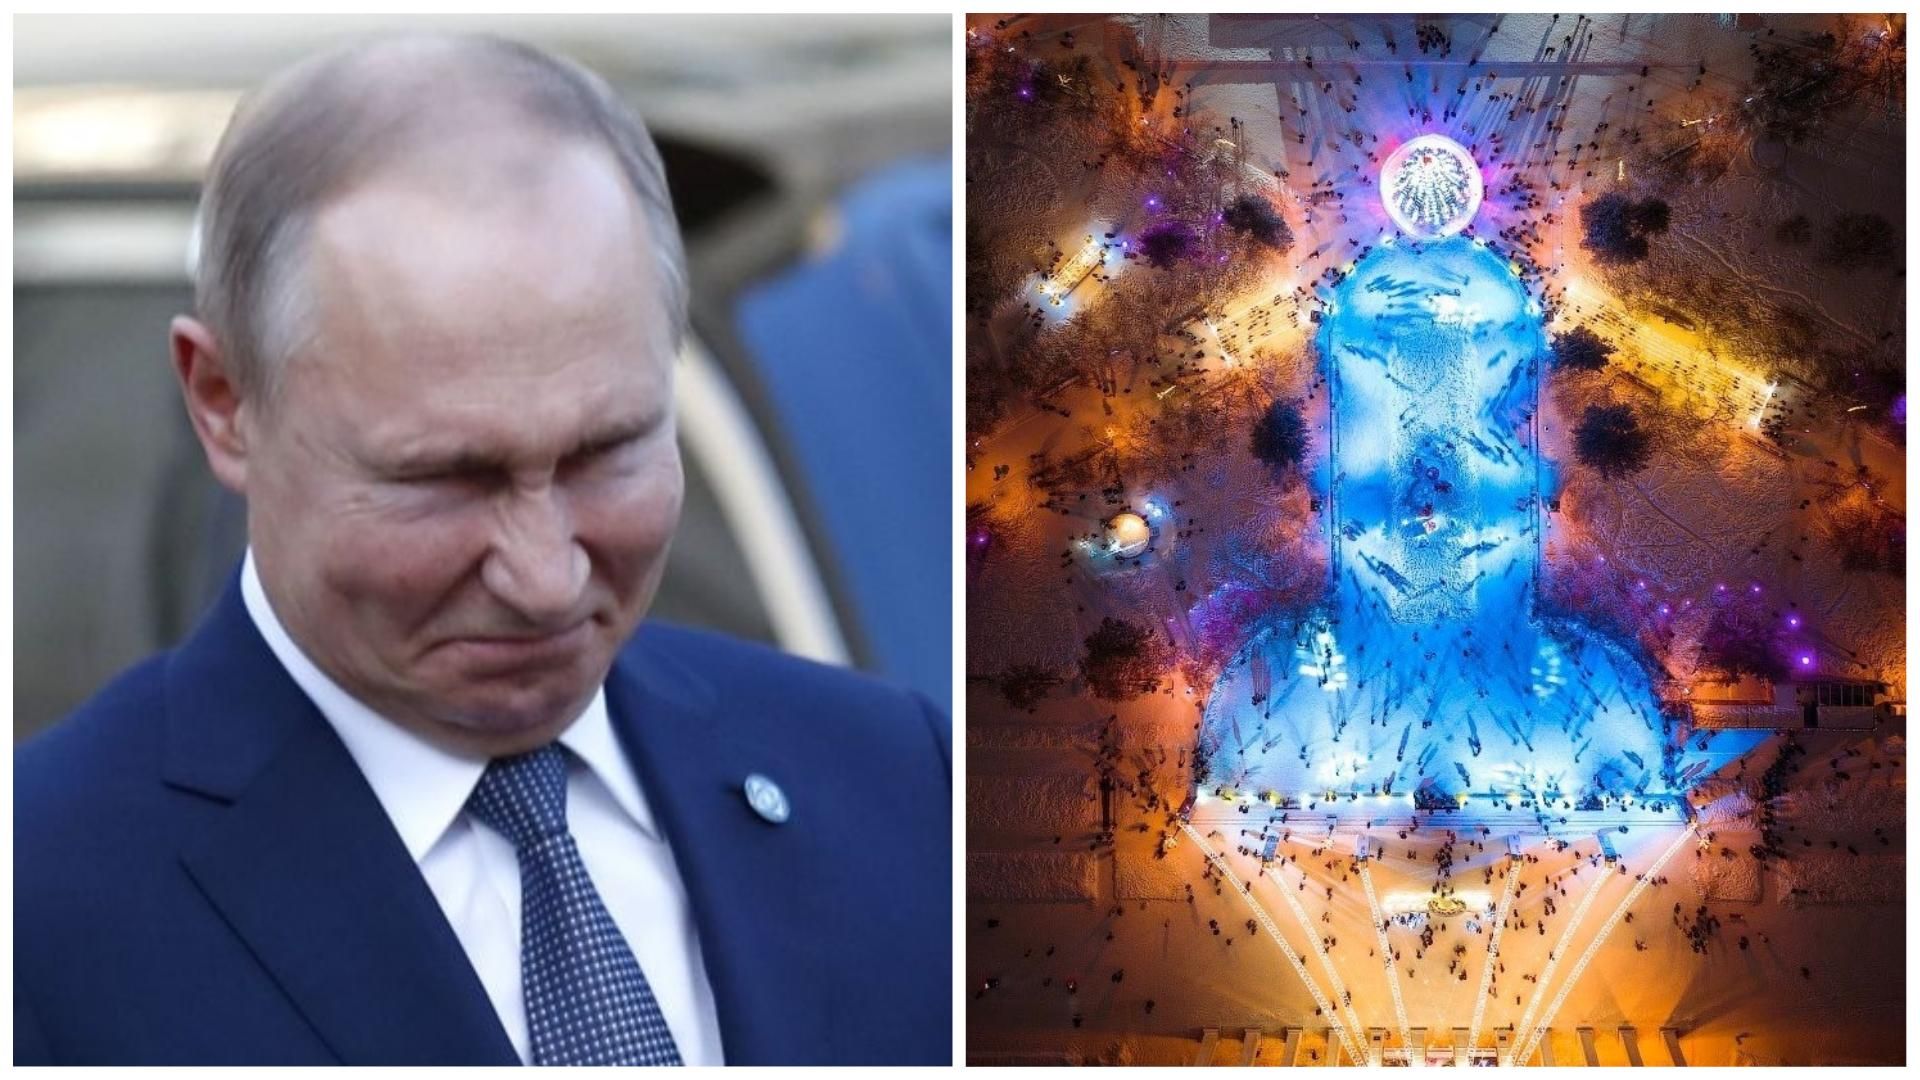 Имени Путина: в Новосибирске власть сделала каток в форме полового члена